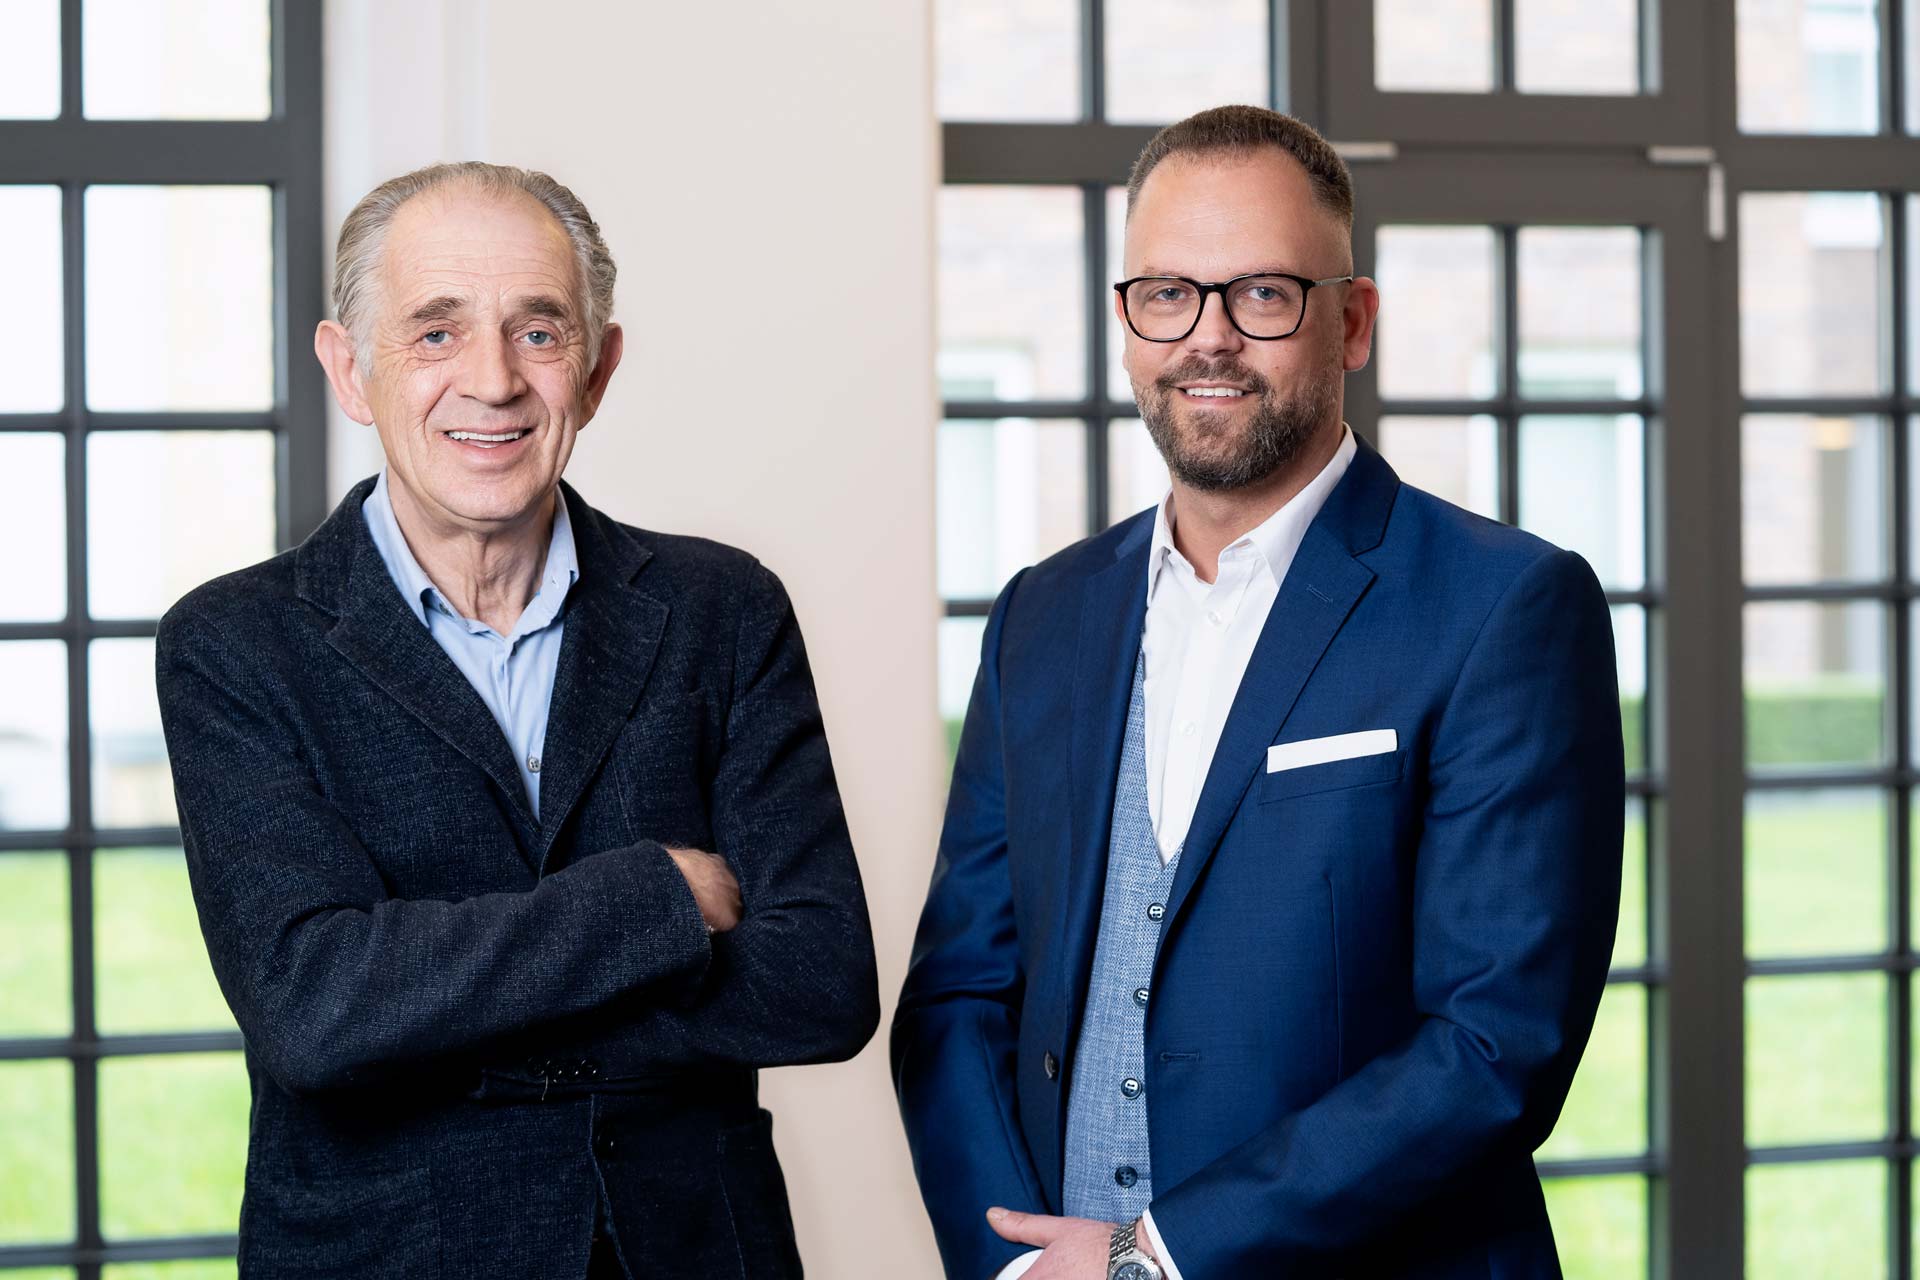 Führungswechsel bei AMR Advanced Market Research: moweb-Inhaber Herbert Höckel übernimmt weitere Geschäftsführung